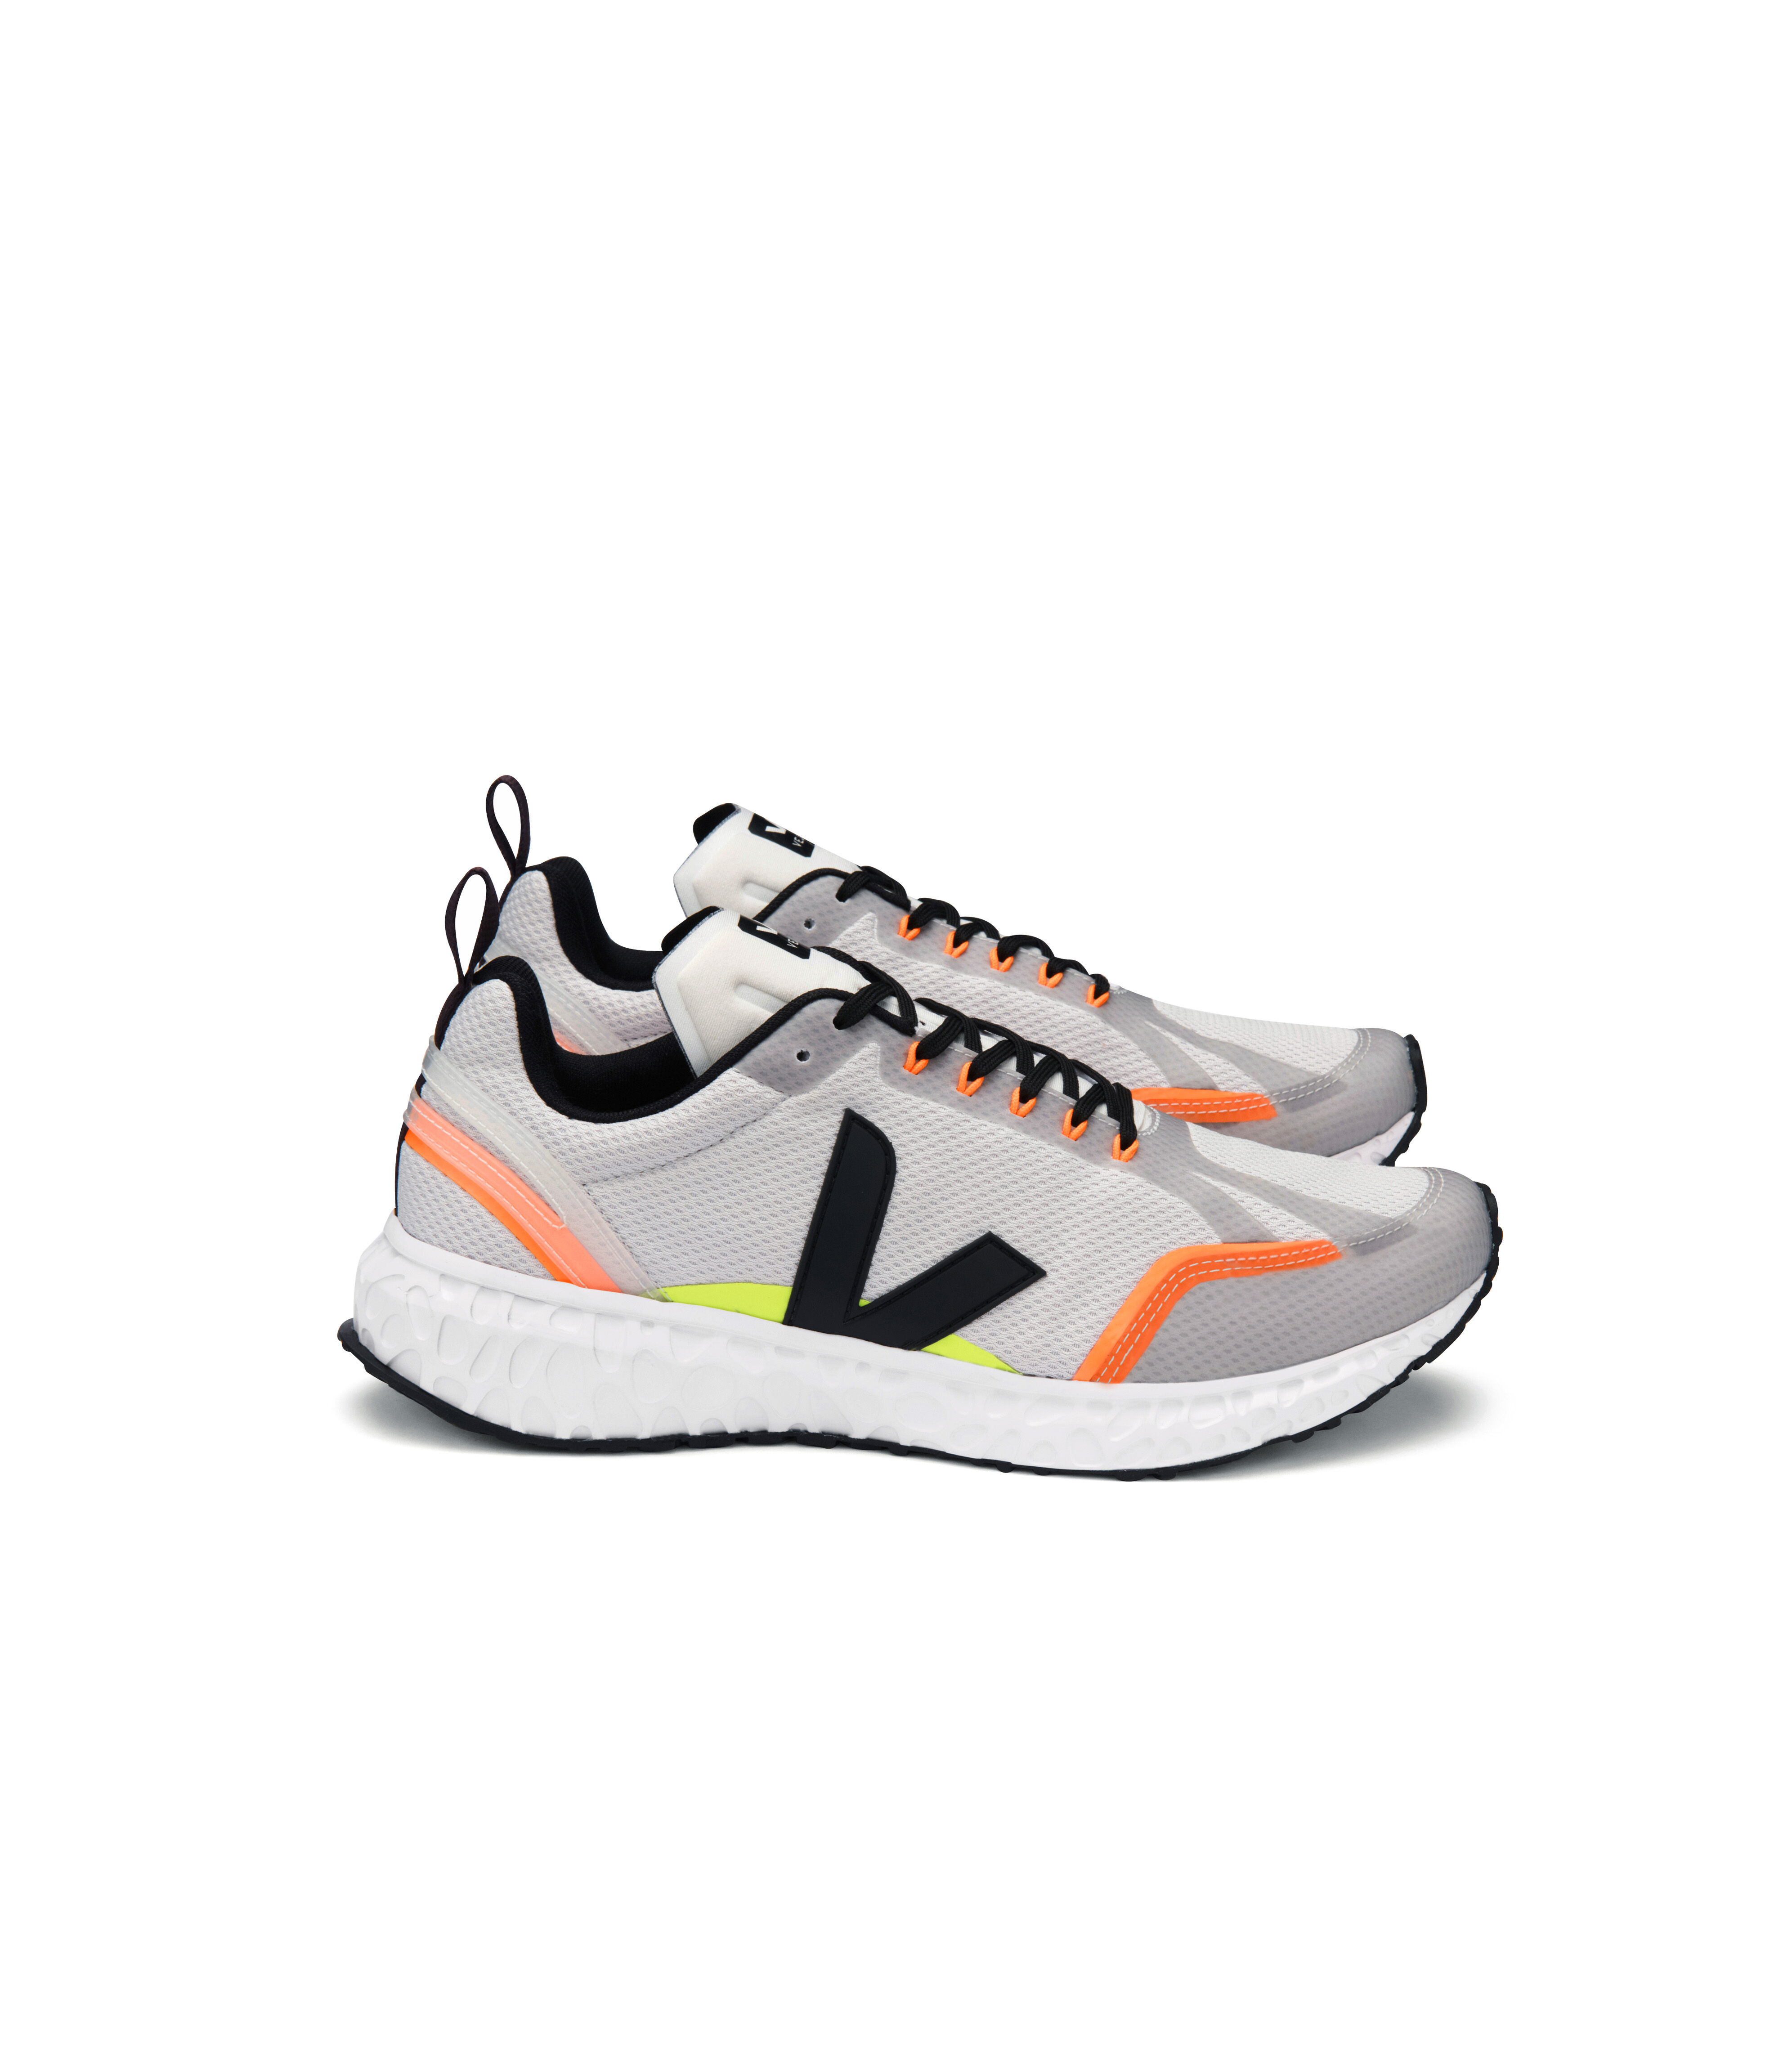 Veja Condor - Running shoes